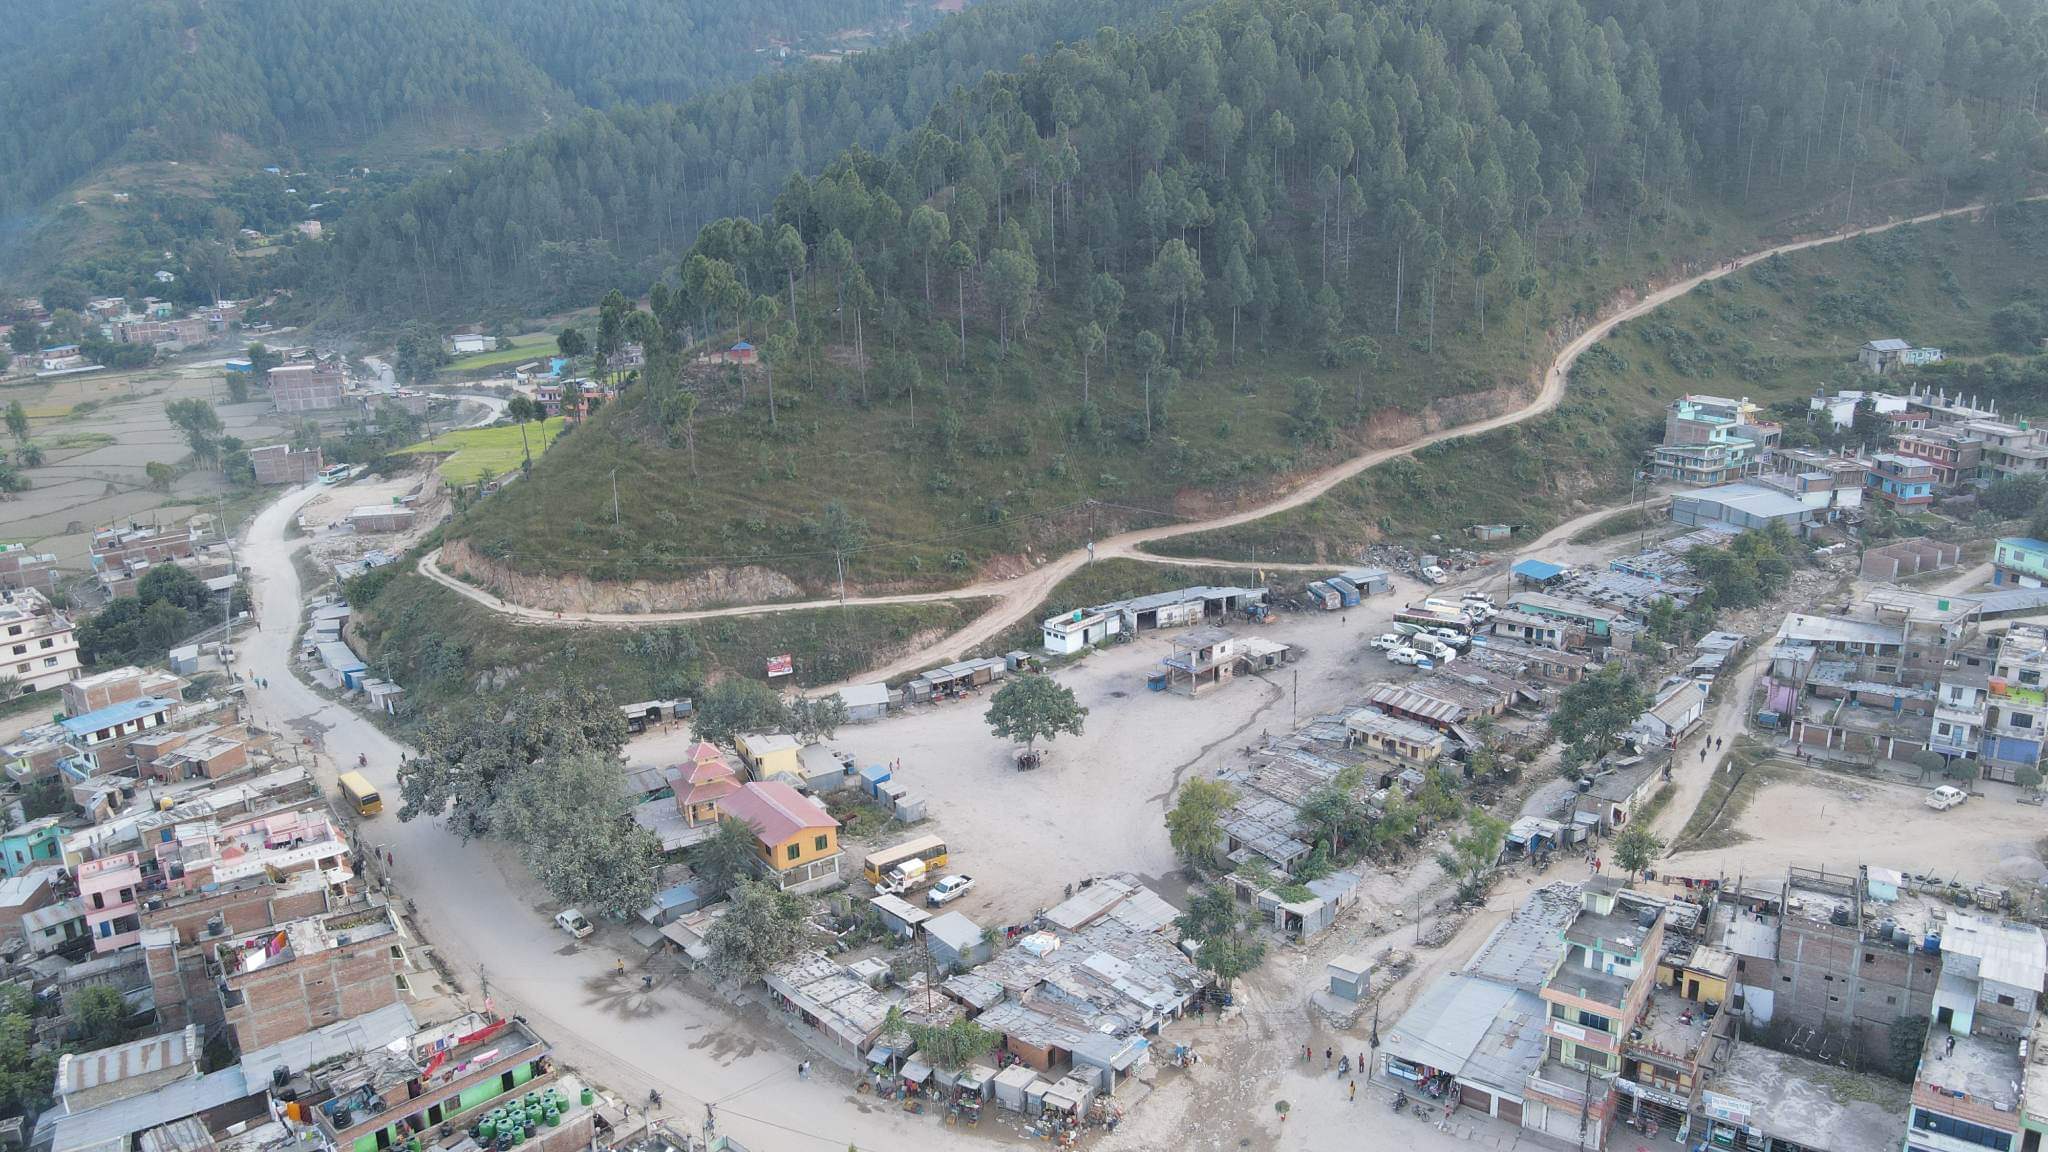 सल्यानको श्रीनगर बसपार्क एरिया भित्र एलानी जग्गामा रहेका घर टहराहरु हटाउन नगरपालिकाको आग्रह